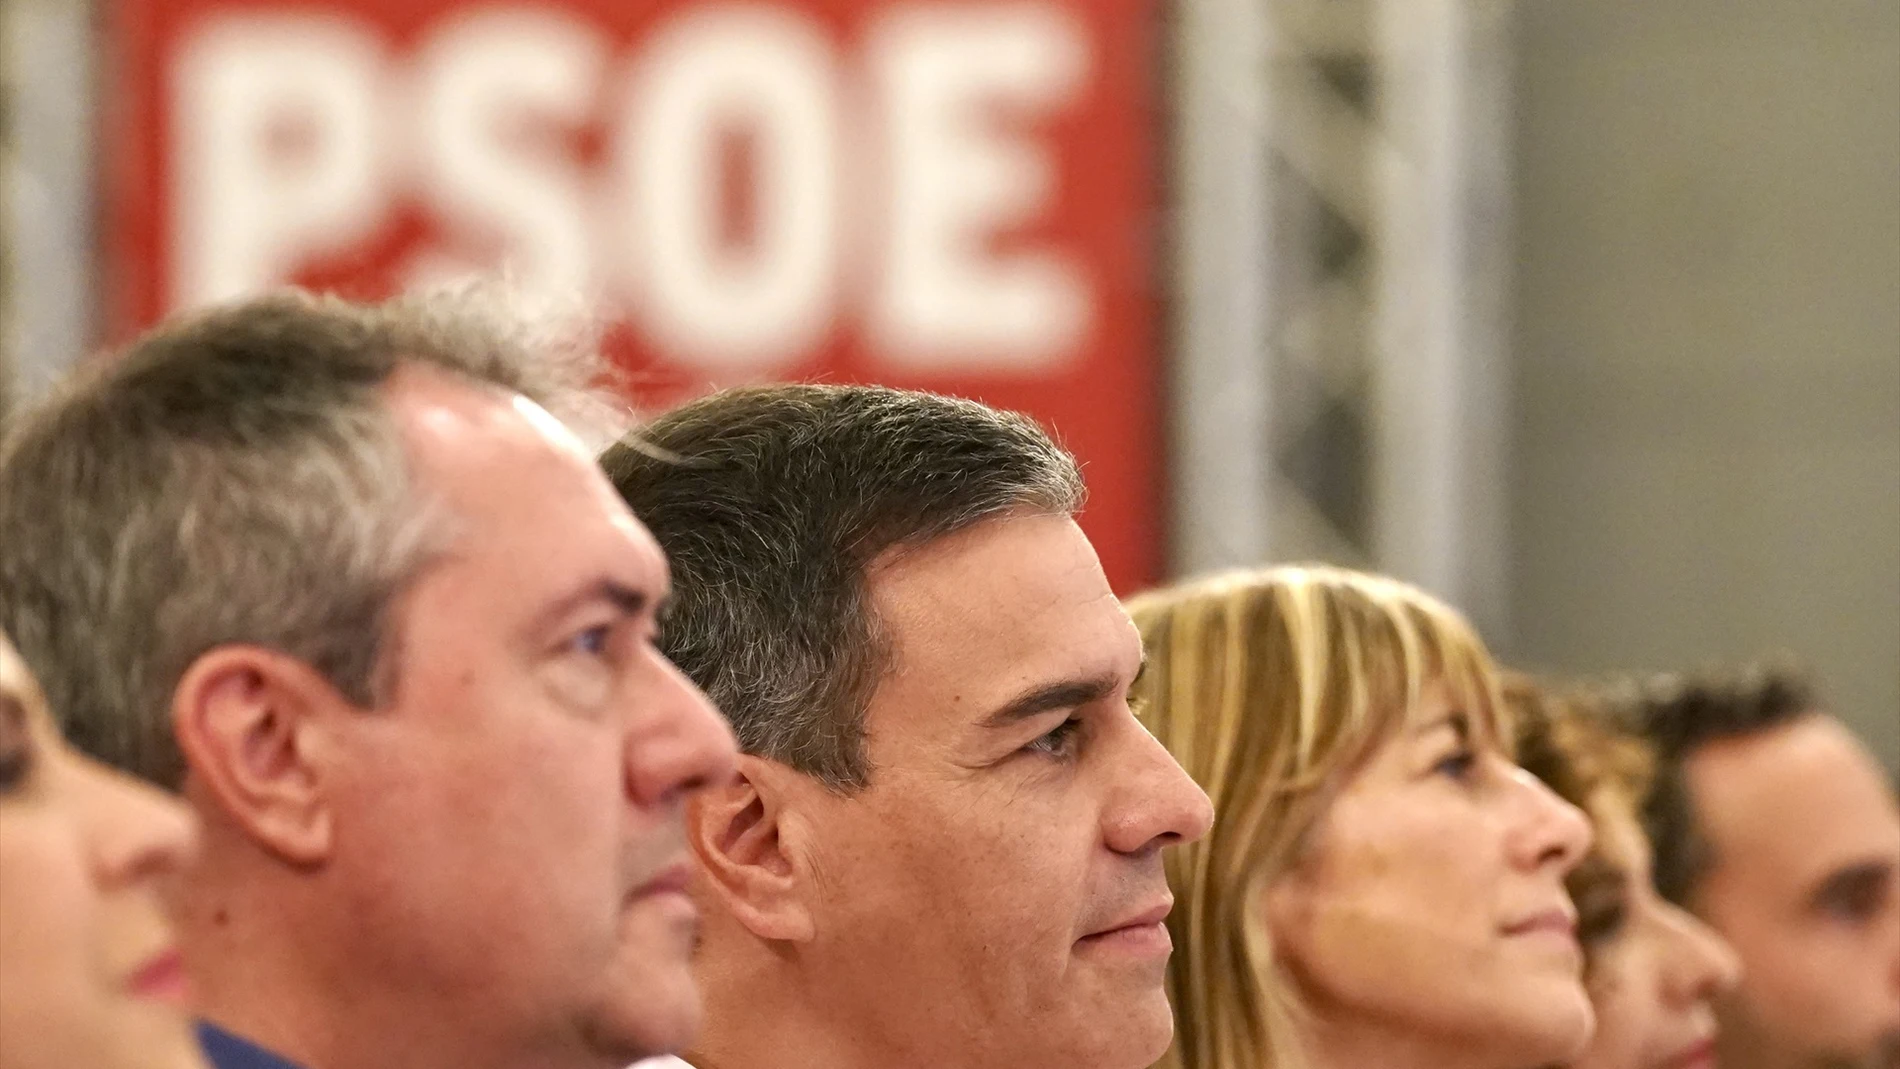 Espadas se vuelca con Pedro Sánchez y su esposa: "Gracias presidente"